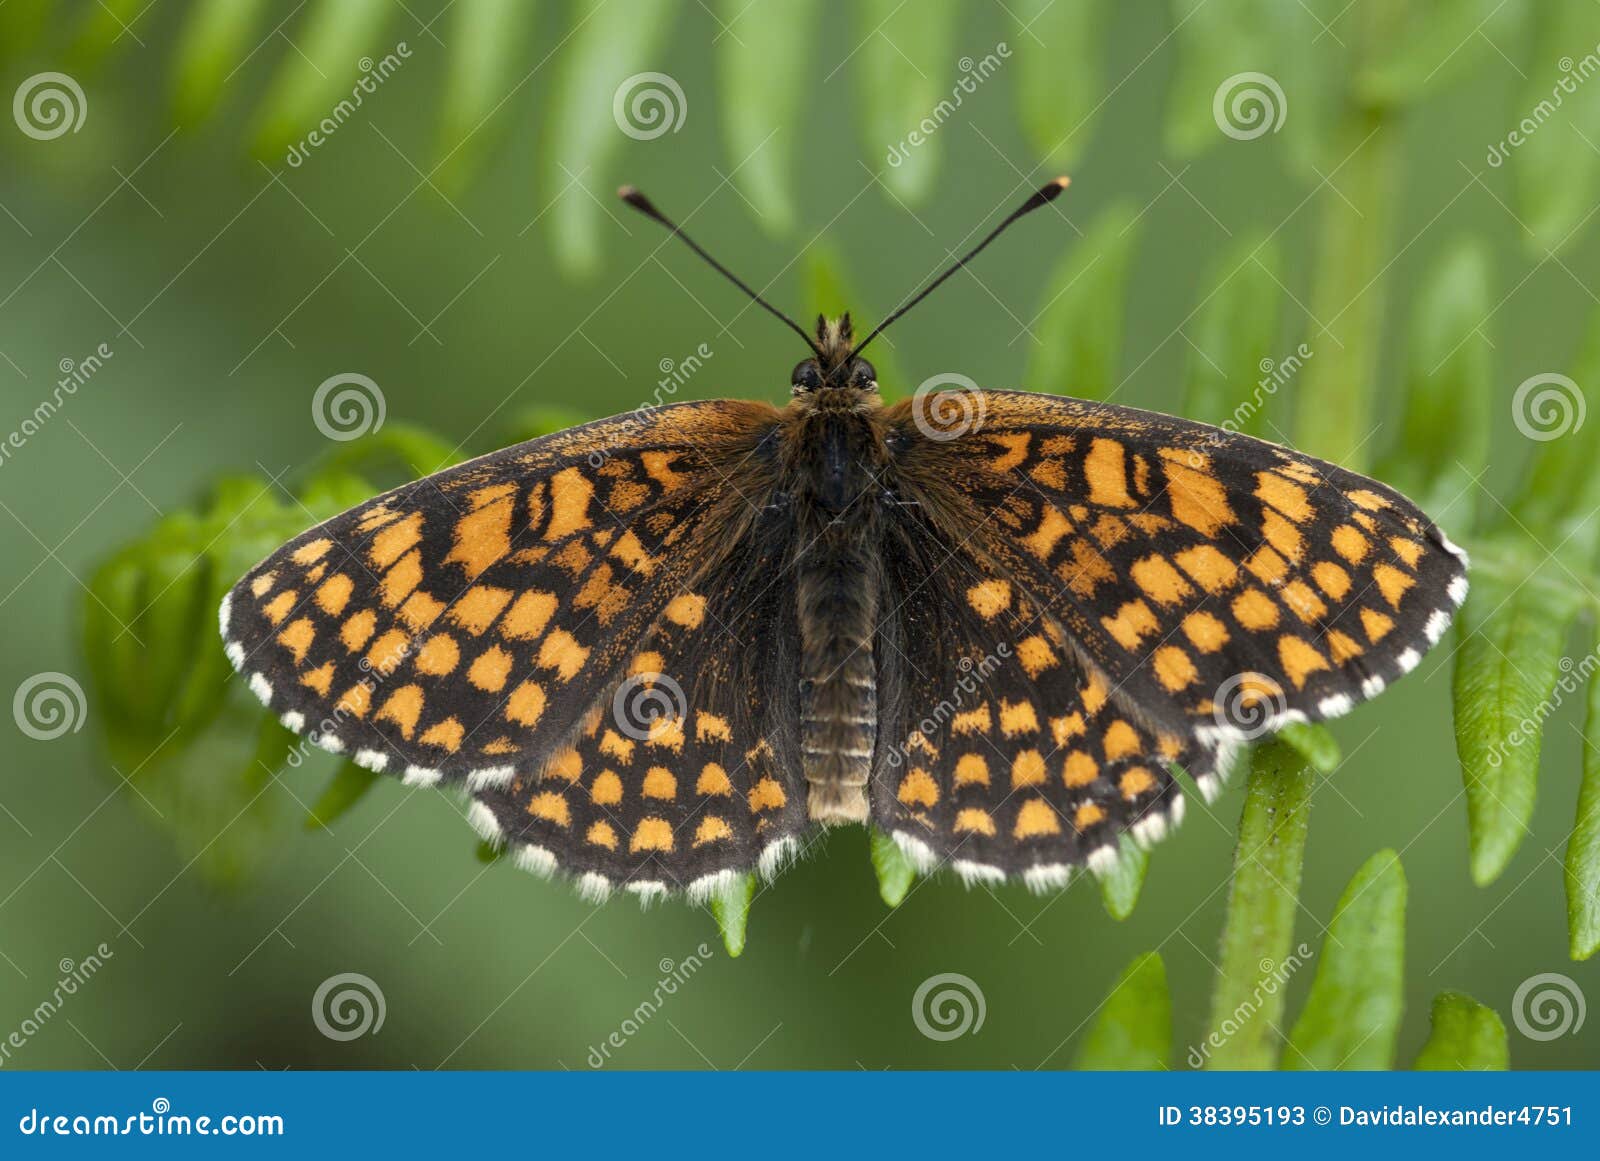 heath fritillary butterfly, melitaea athalia